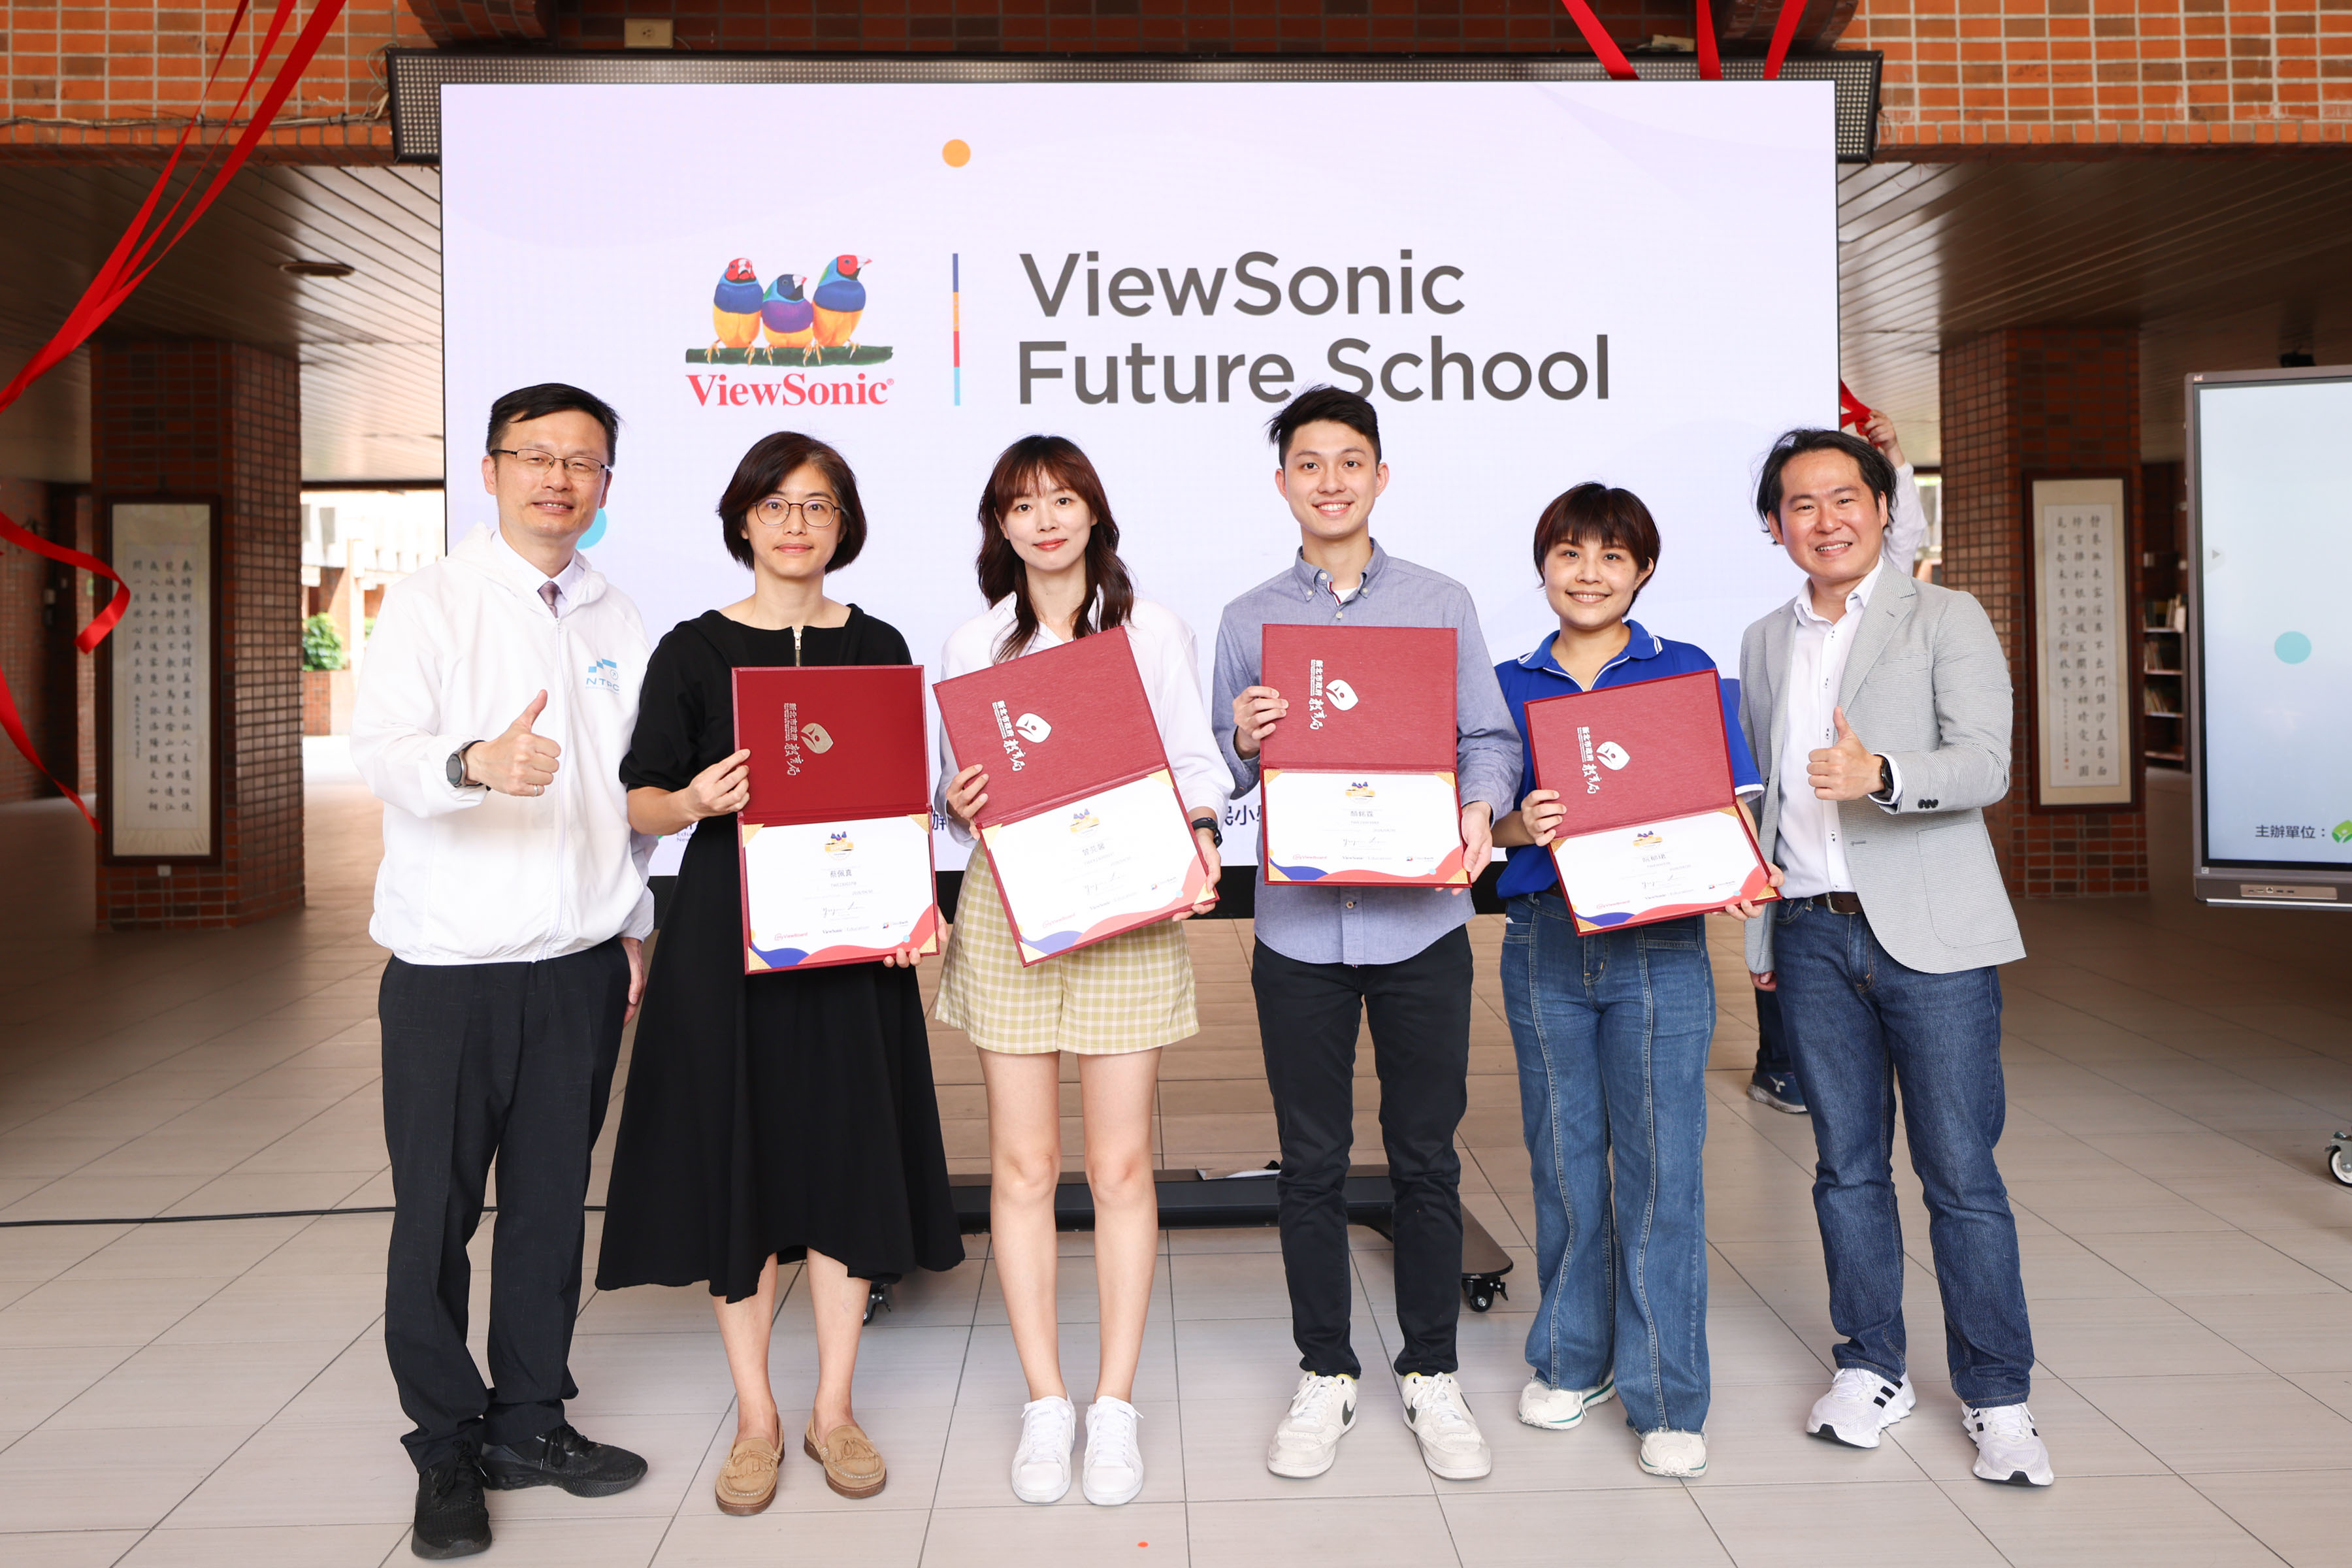 後埔國小4位老師獲頒「ViewSonic領航講師」榮譽，展現在數位教學領域的出色表現。